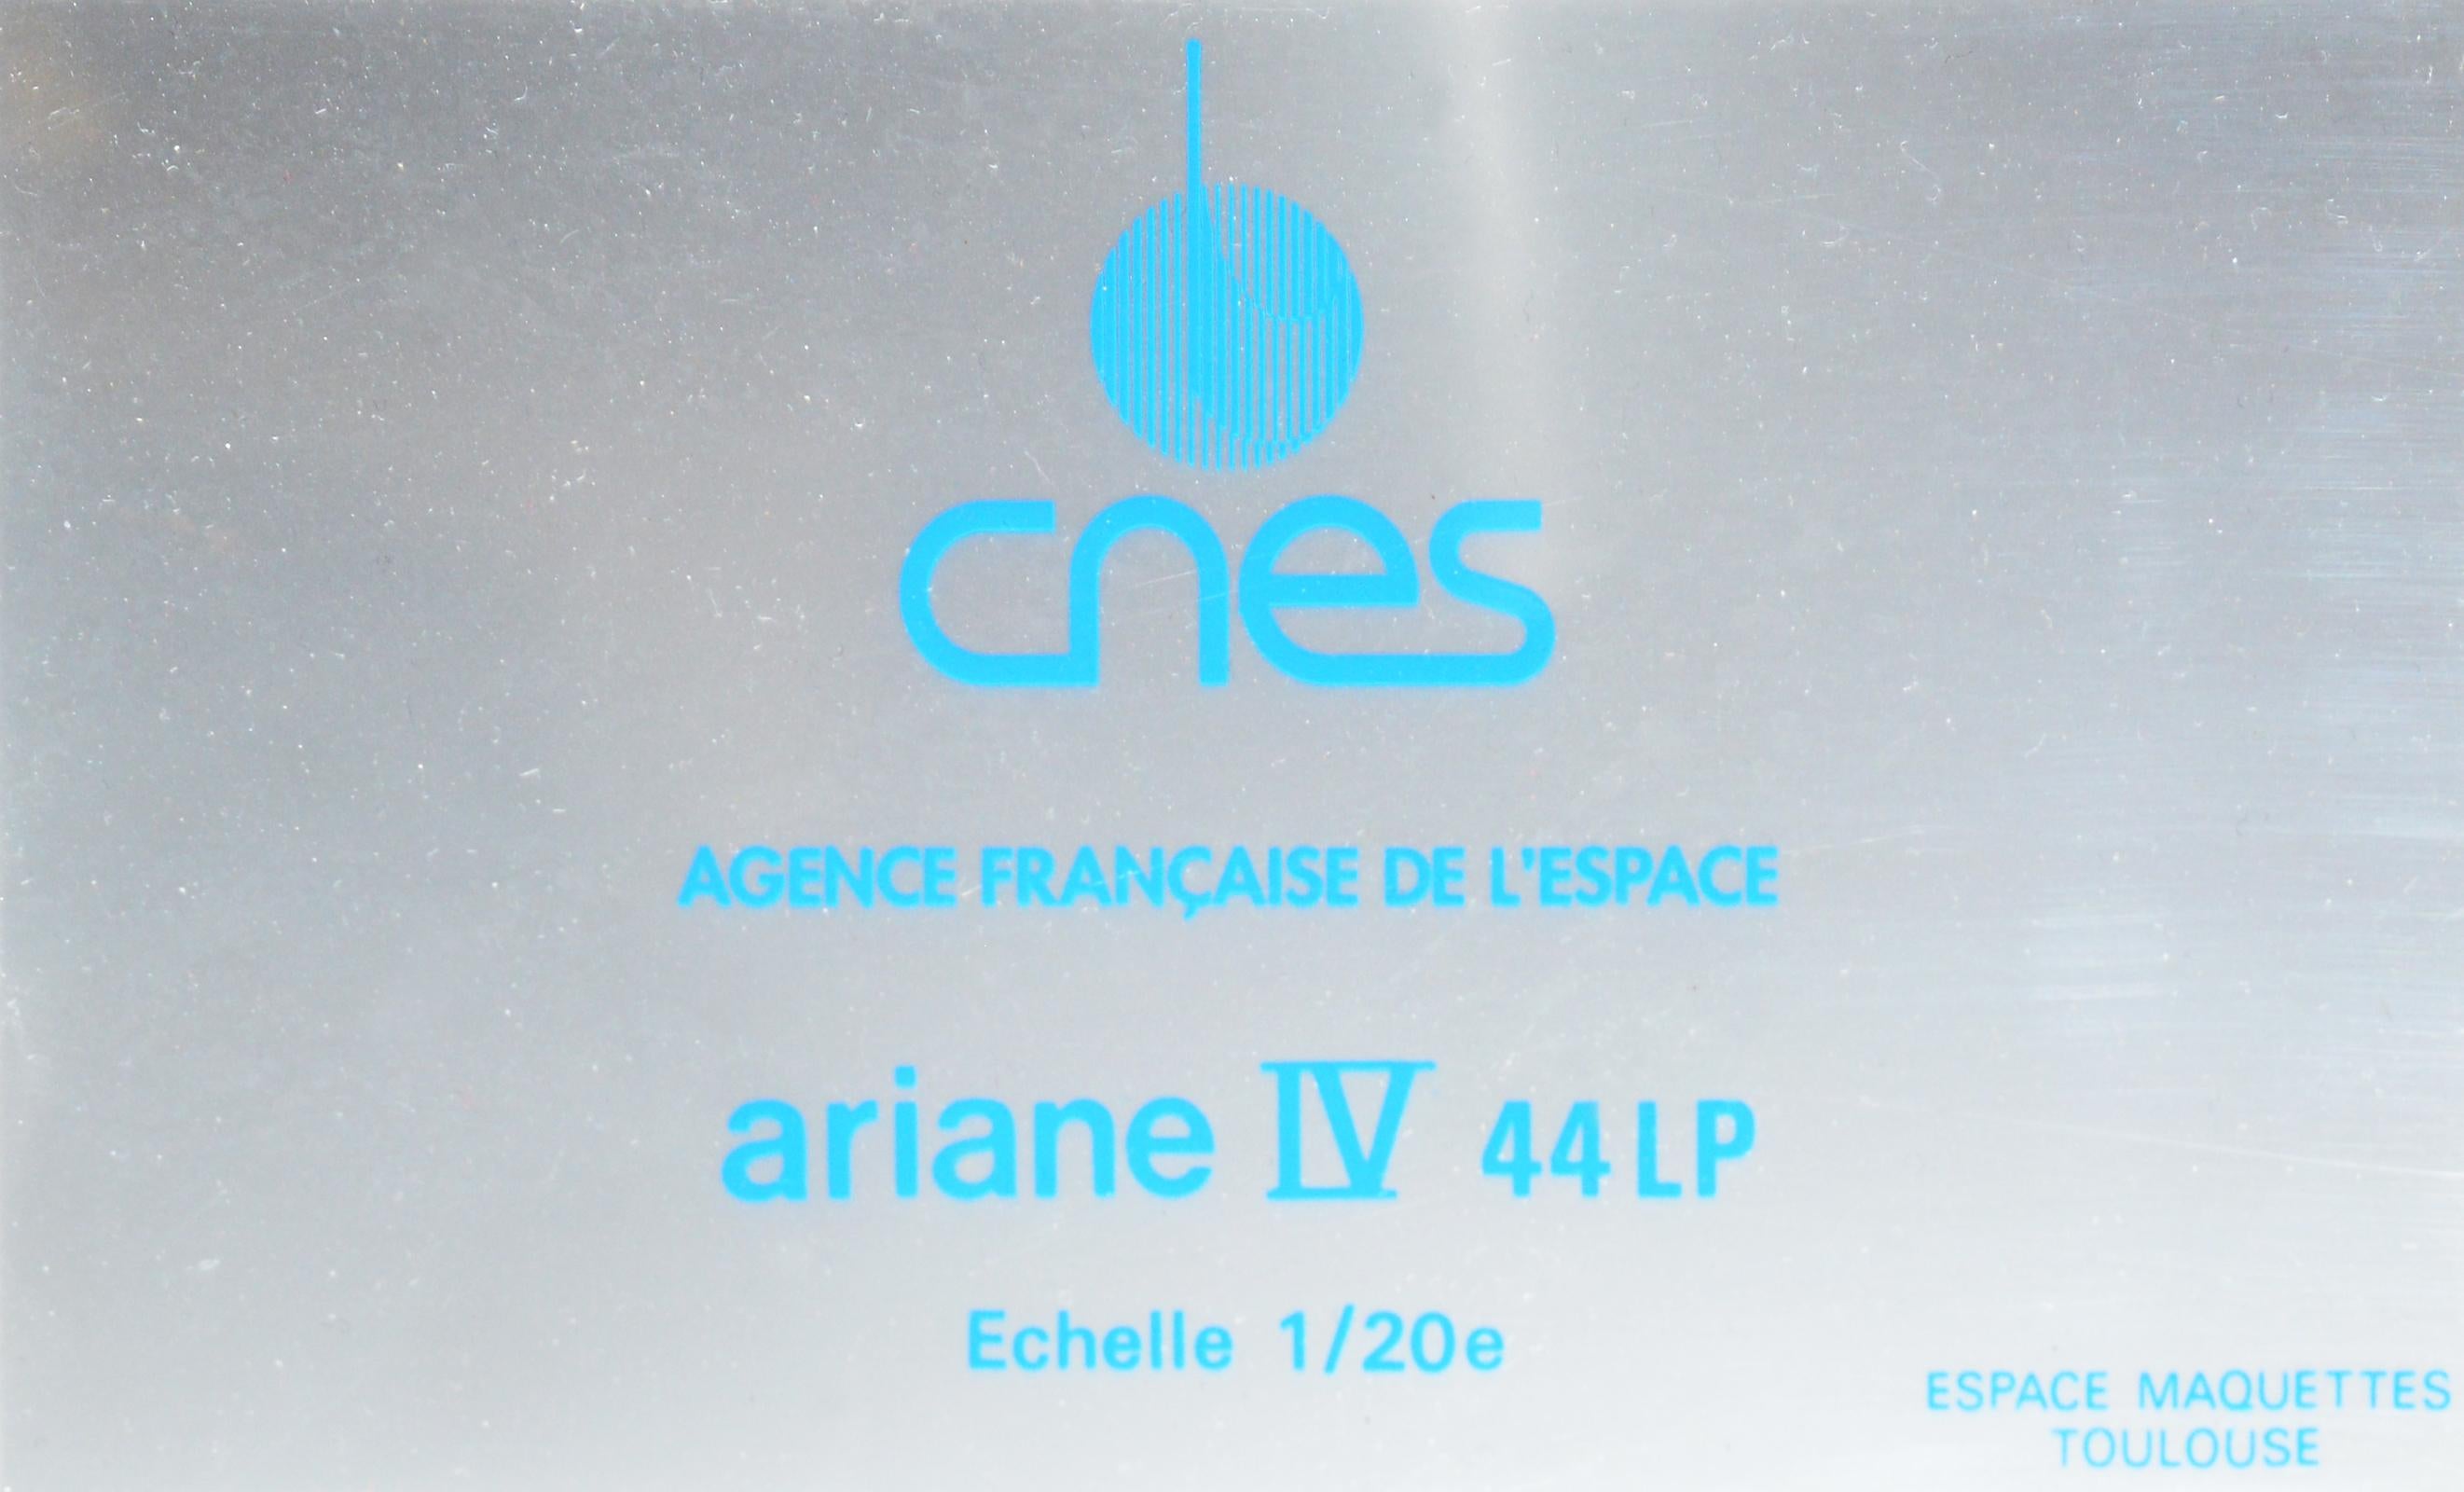 Résine Modèle de fusée Ariane IV 44lp à l'échelle 1/20em en vente